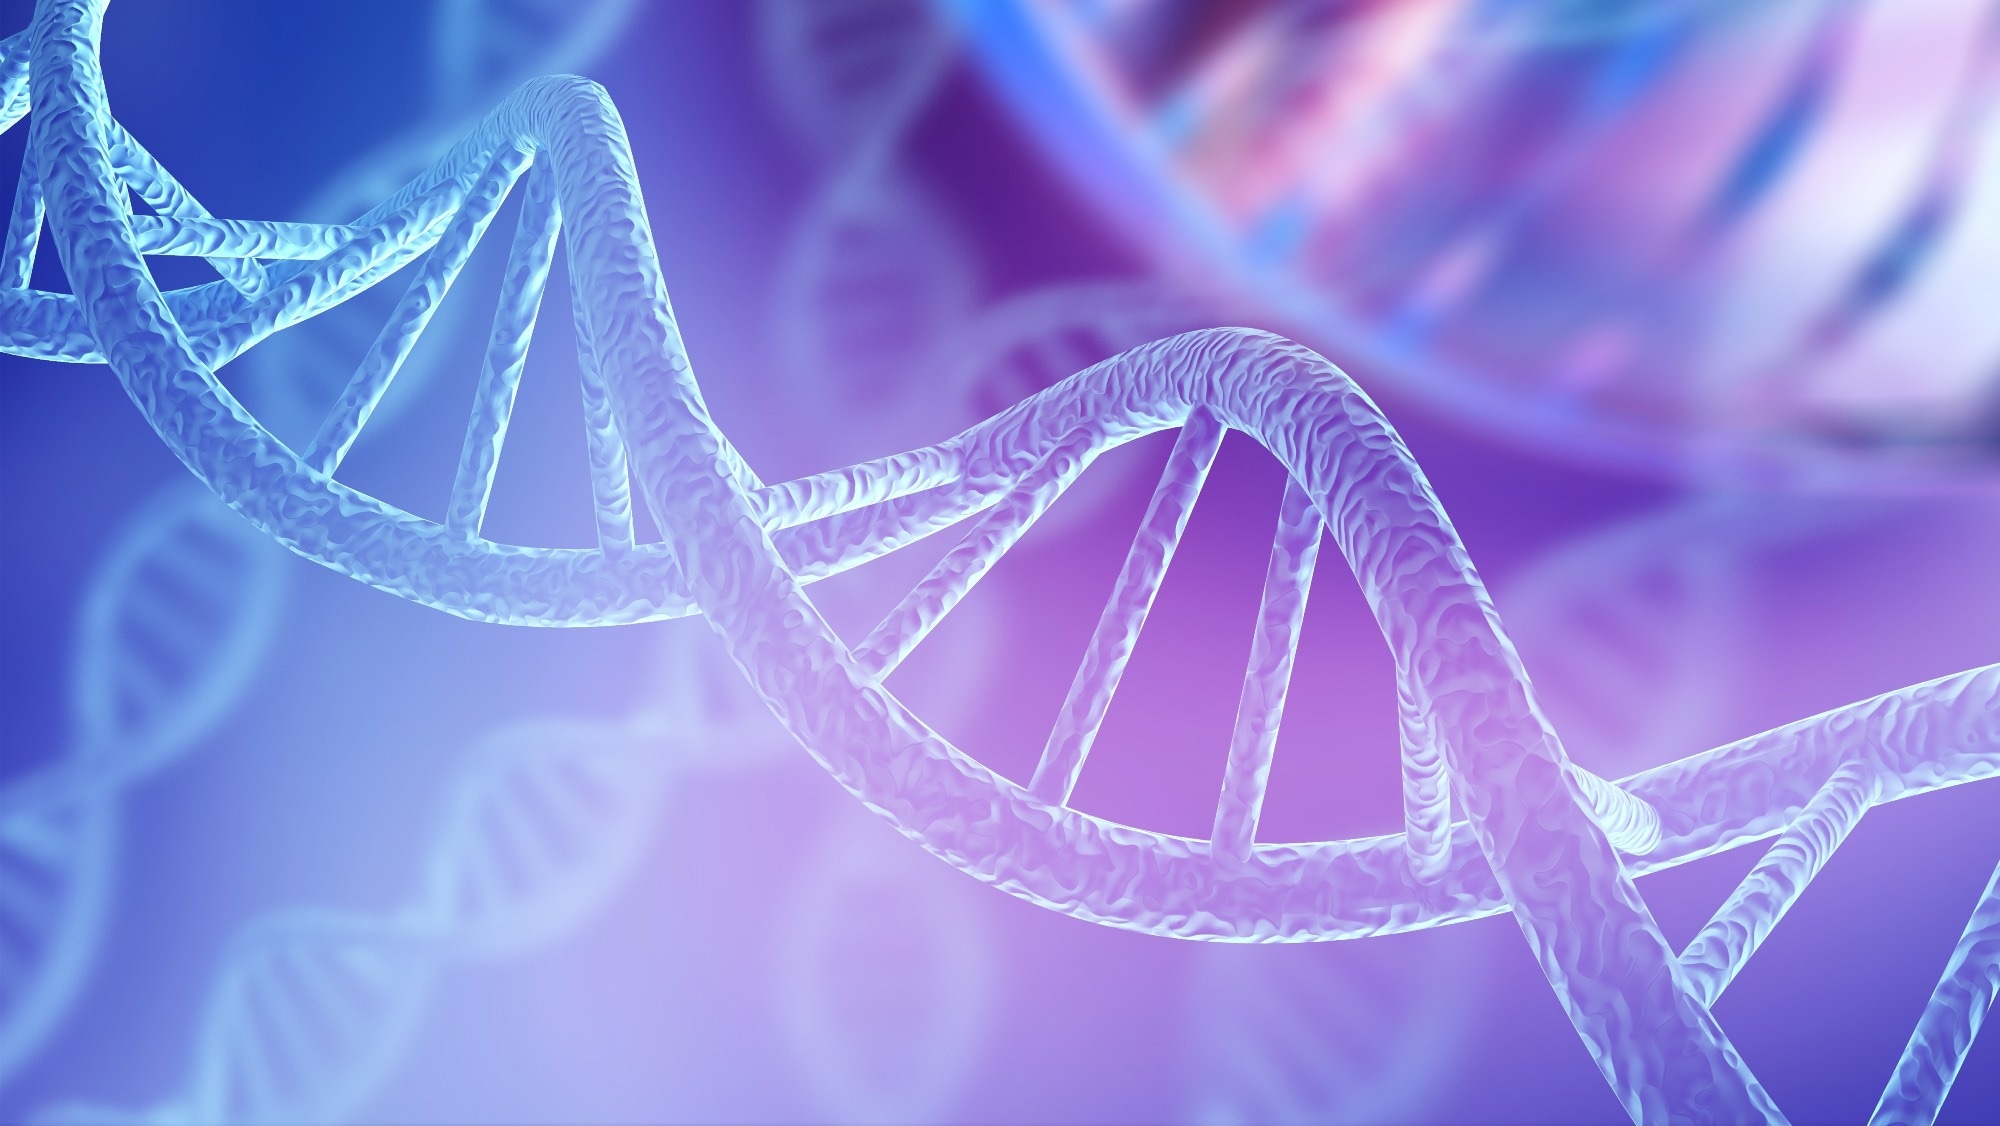 مطالعه: یک دوربین بیولوژیکی که تصاویر را مستقیماً در DNA ثبت و ذخیره می کند.  اعتبار تصویر: BillionPhotos/Shutterstock.com